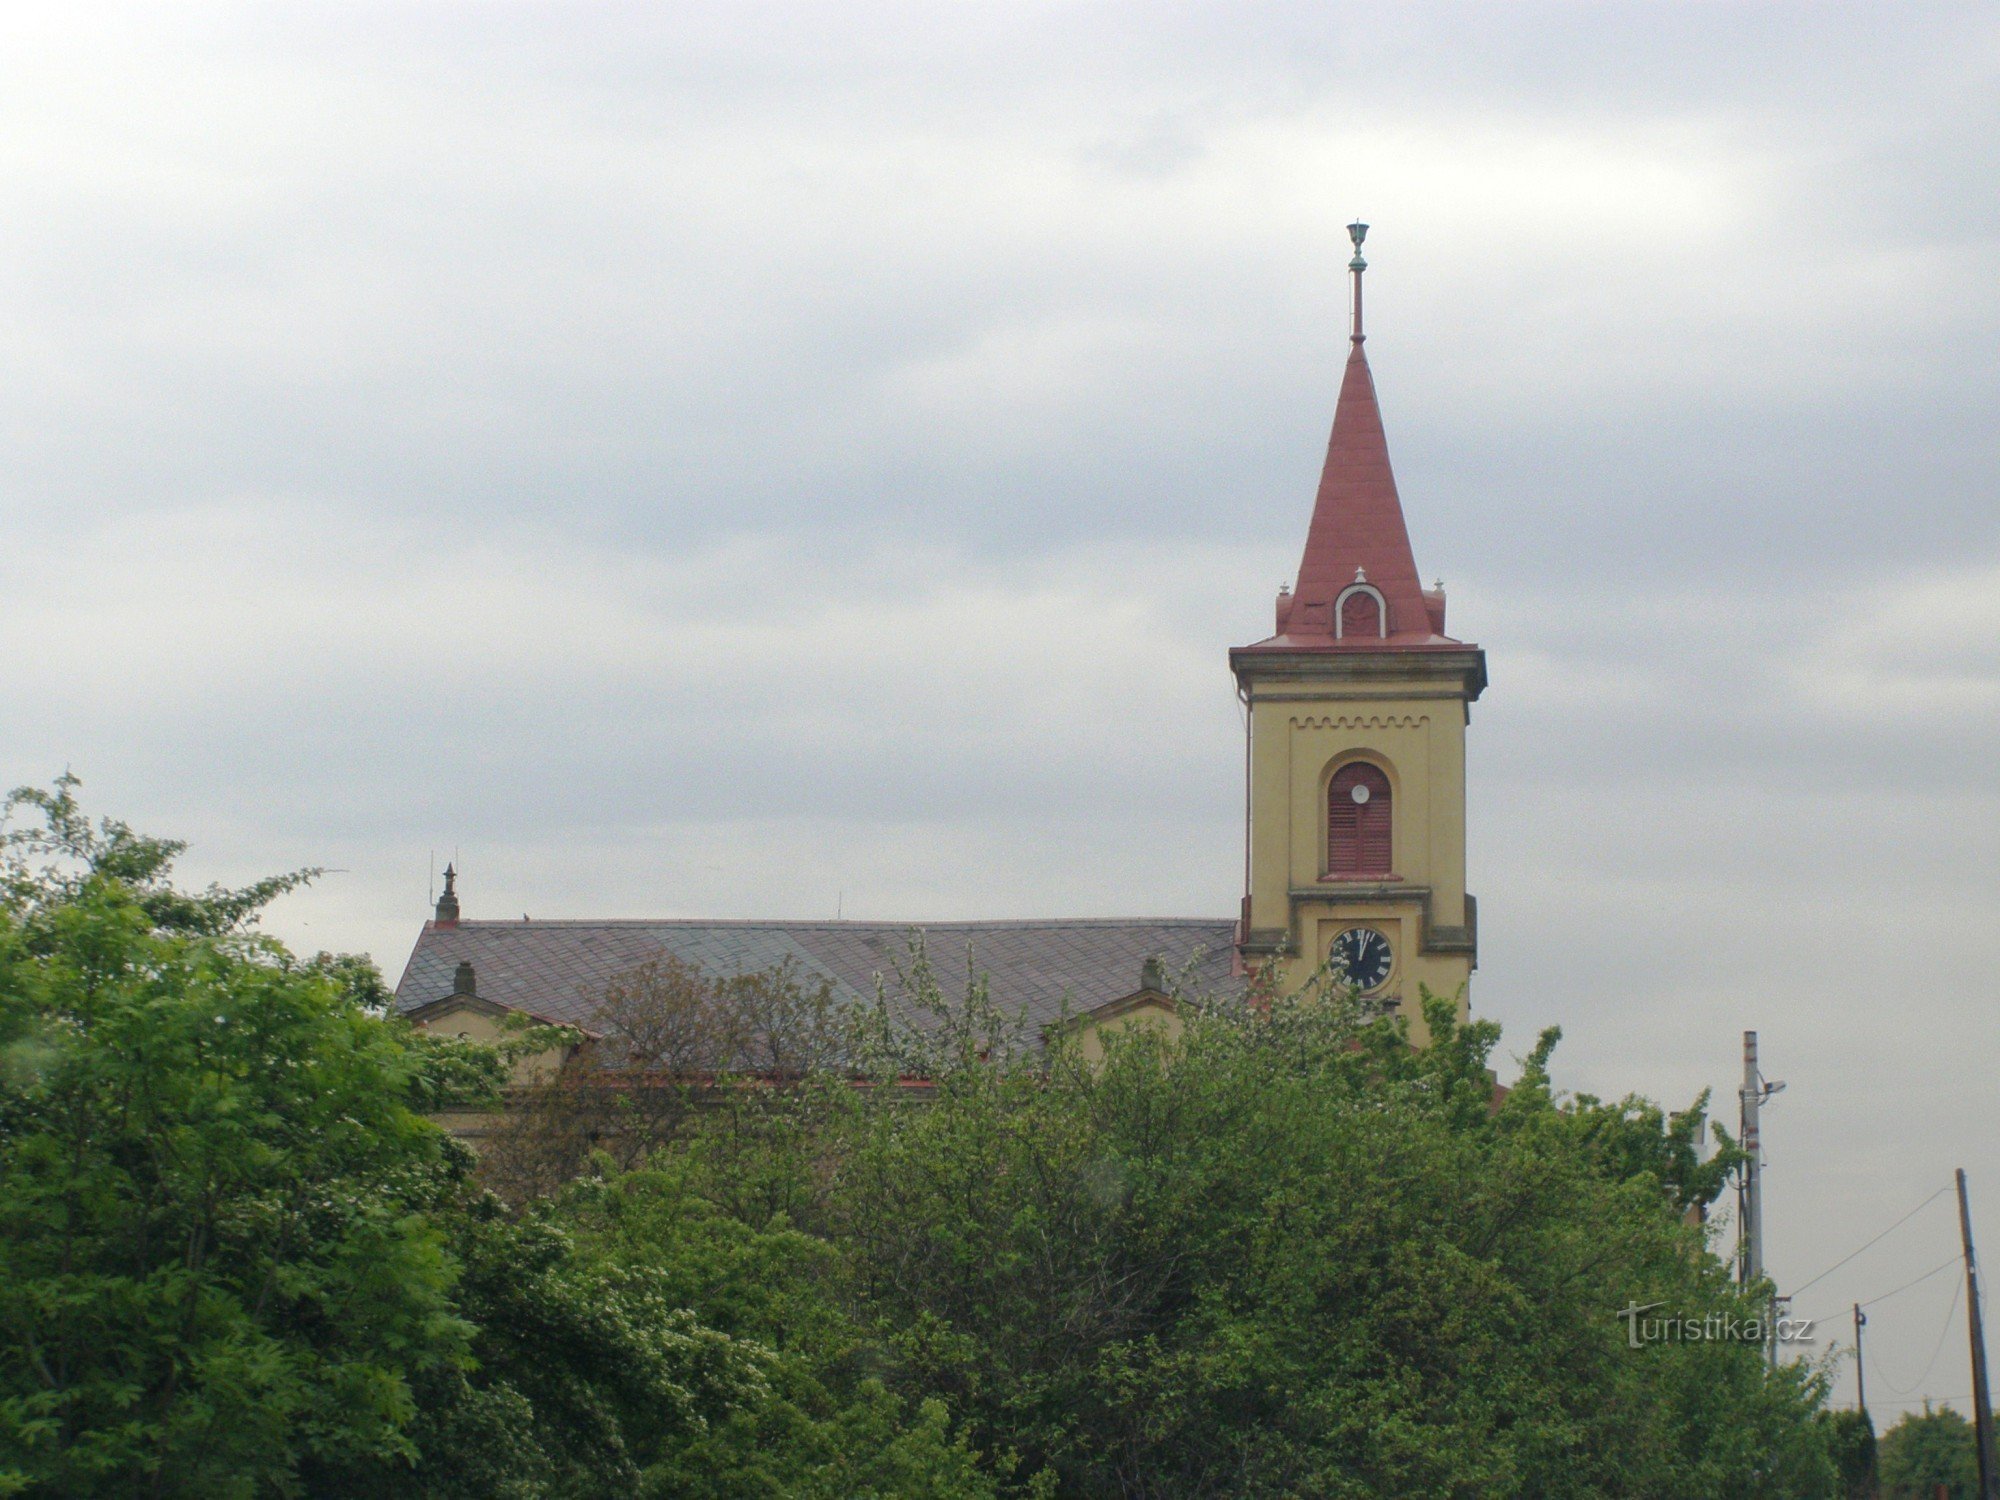 セモニケ - チェコ兄弟福音教会の教会